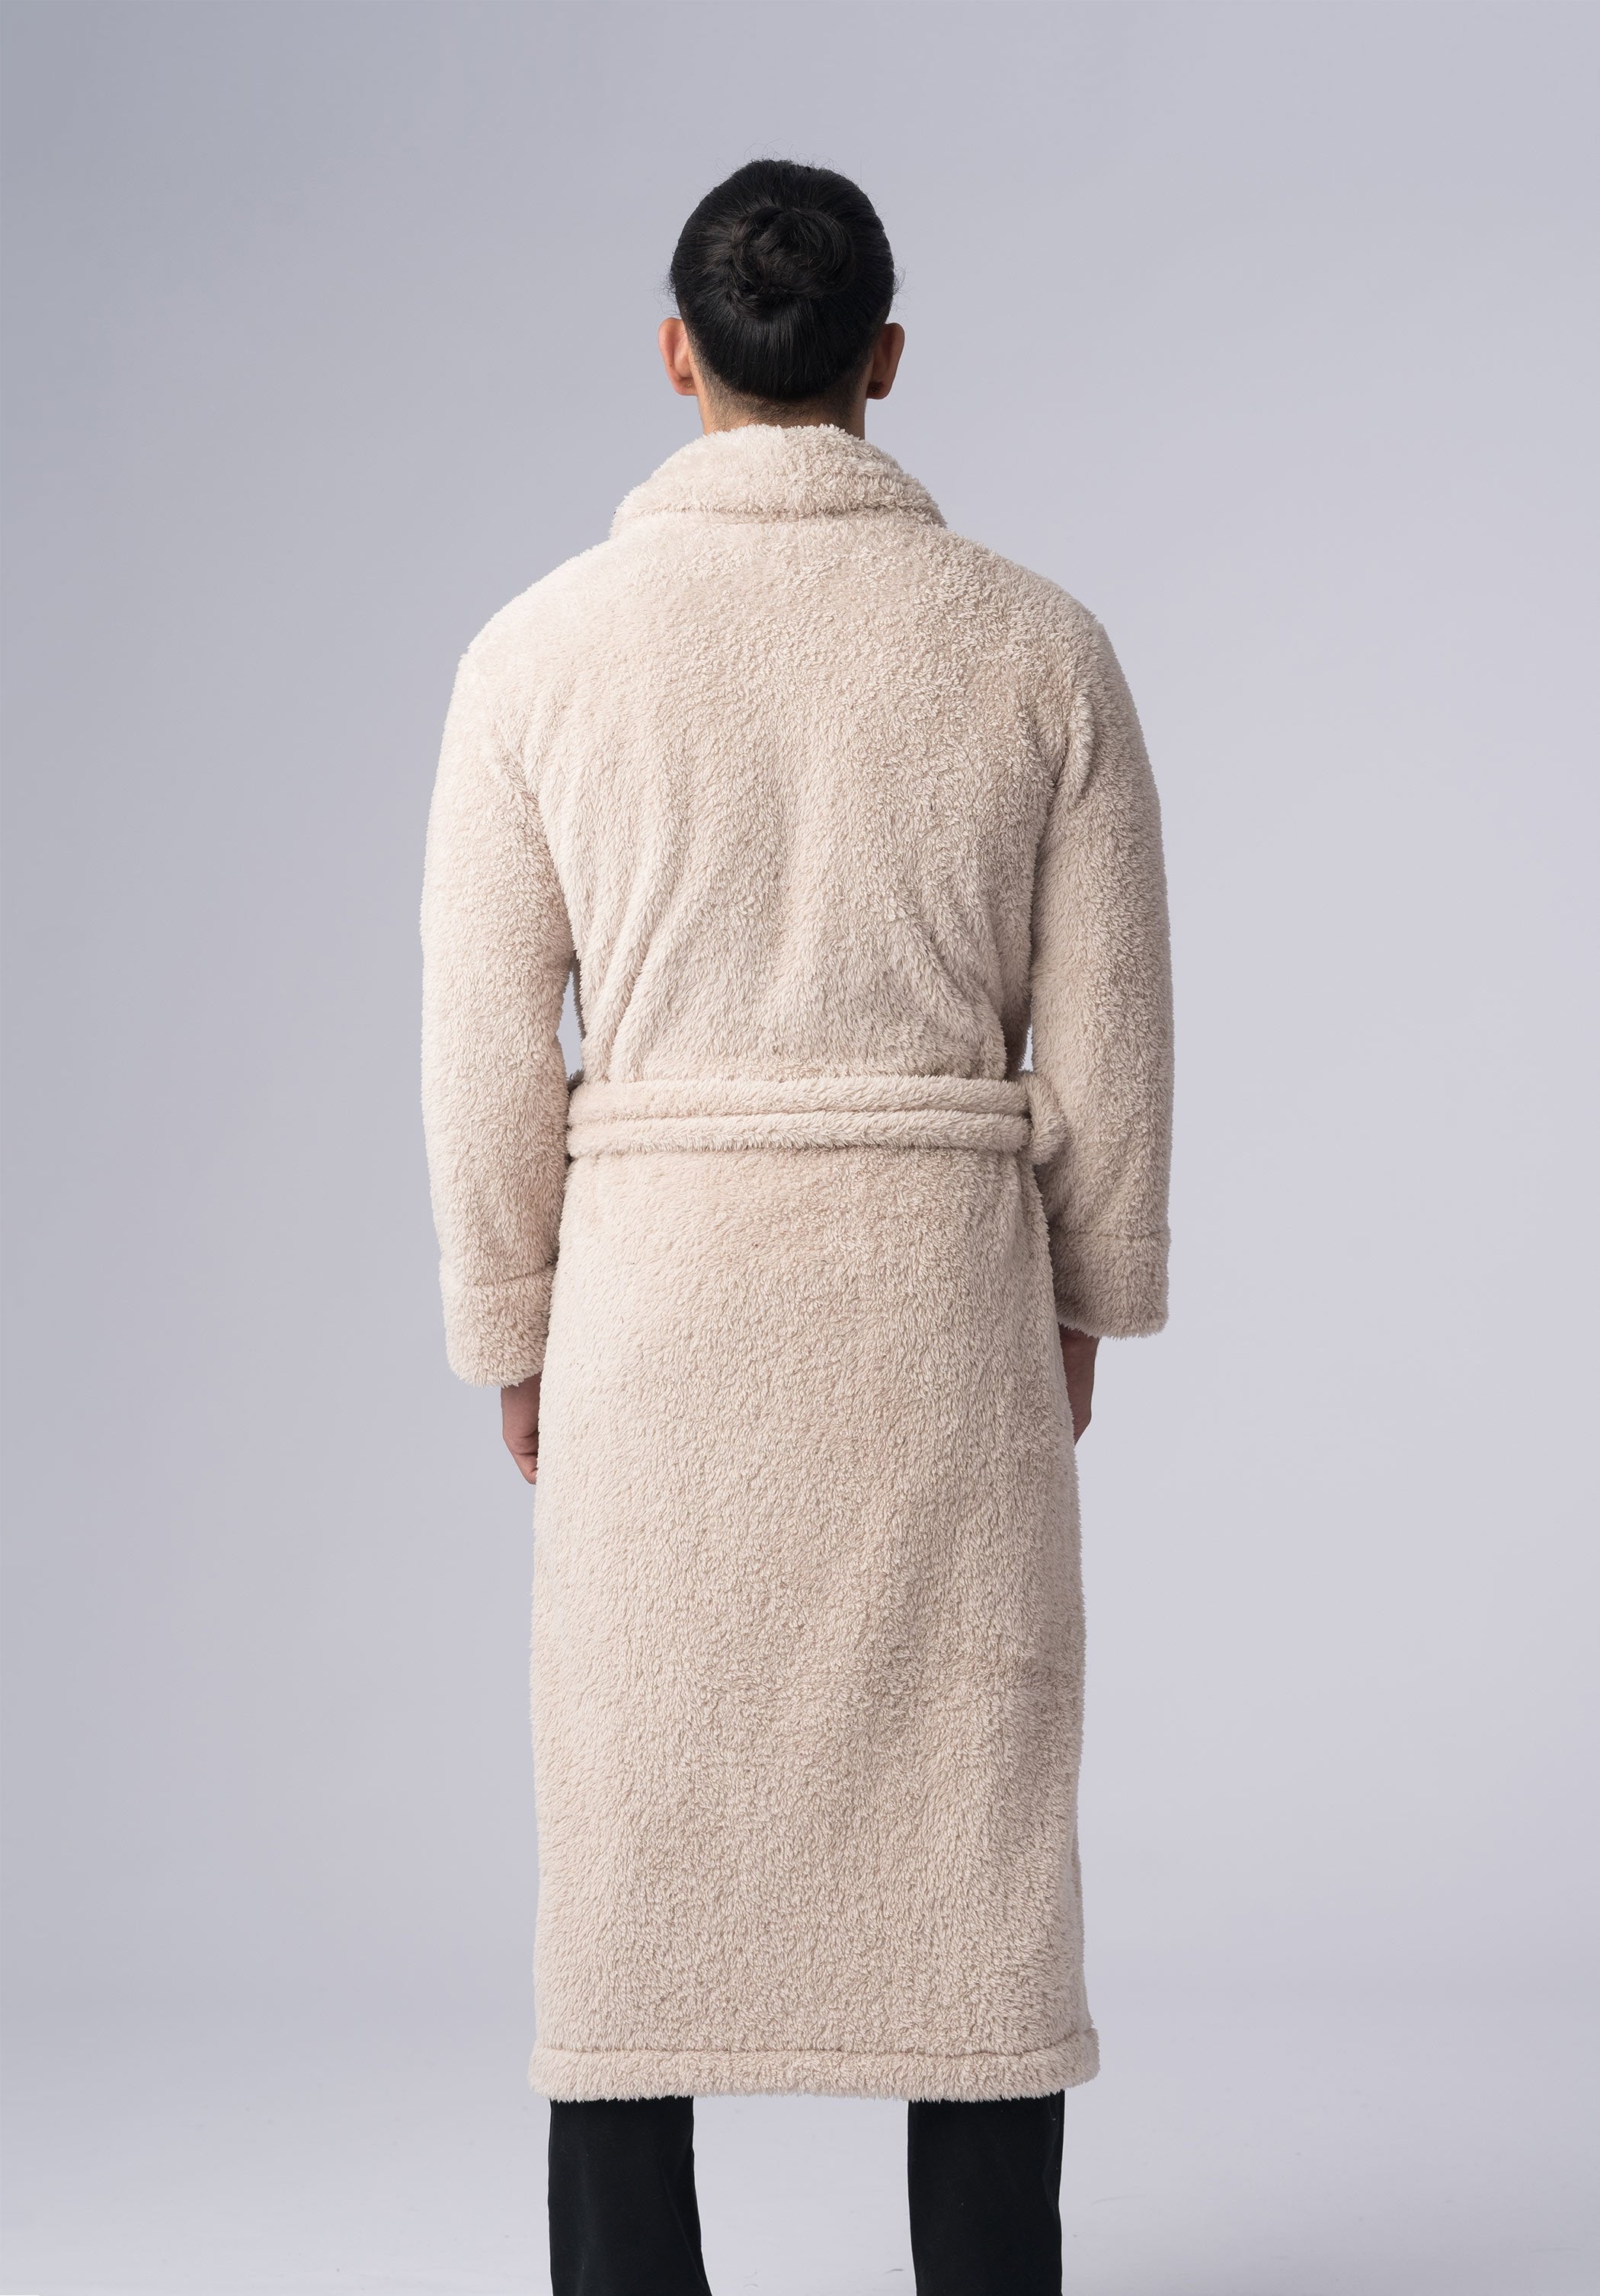 warm-winter-robes-men